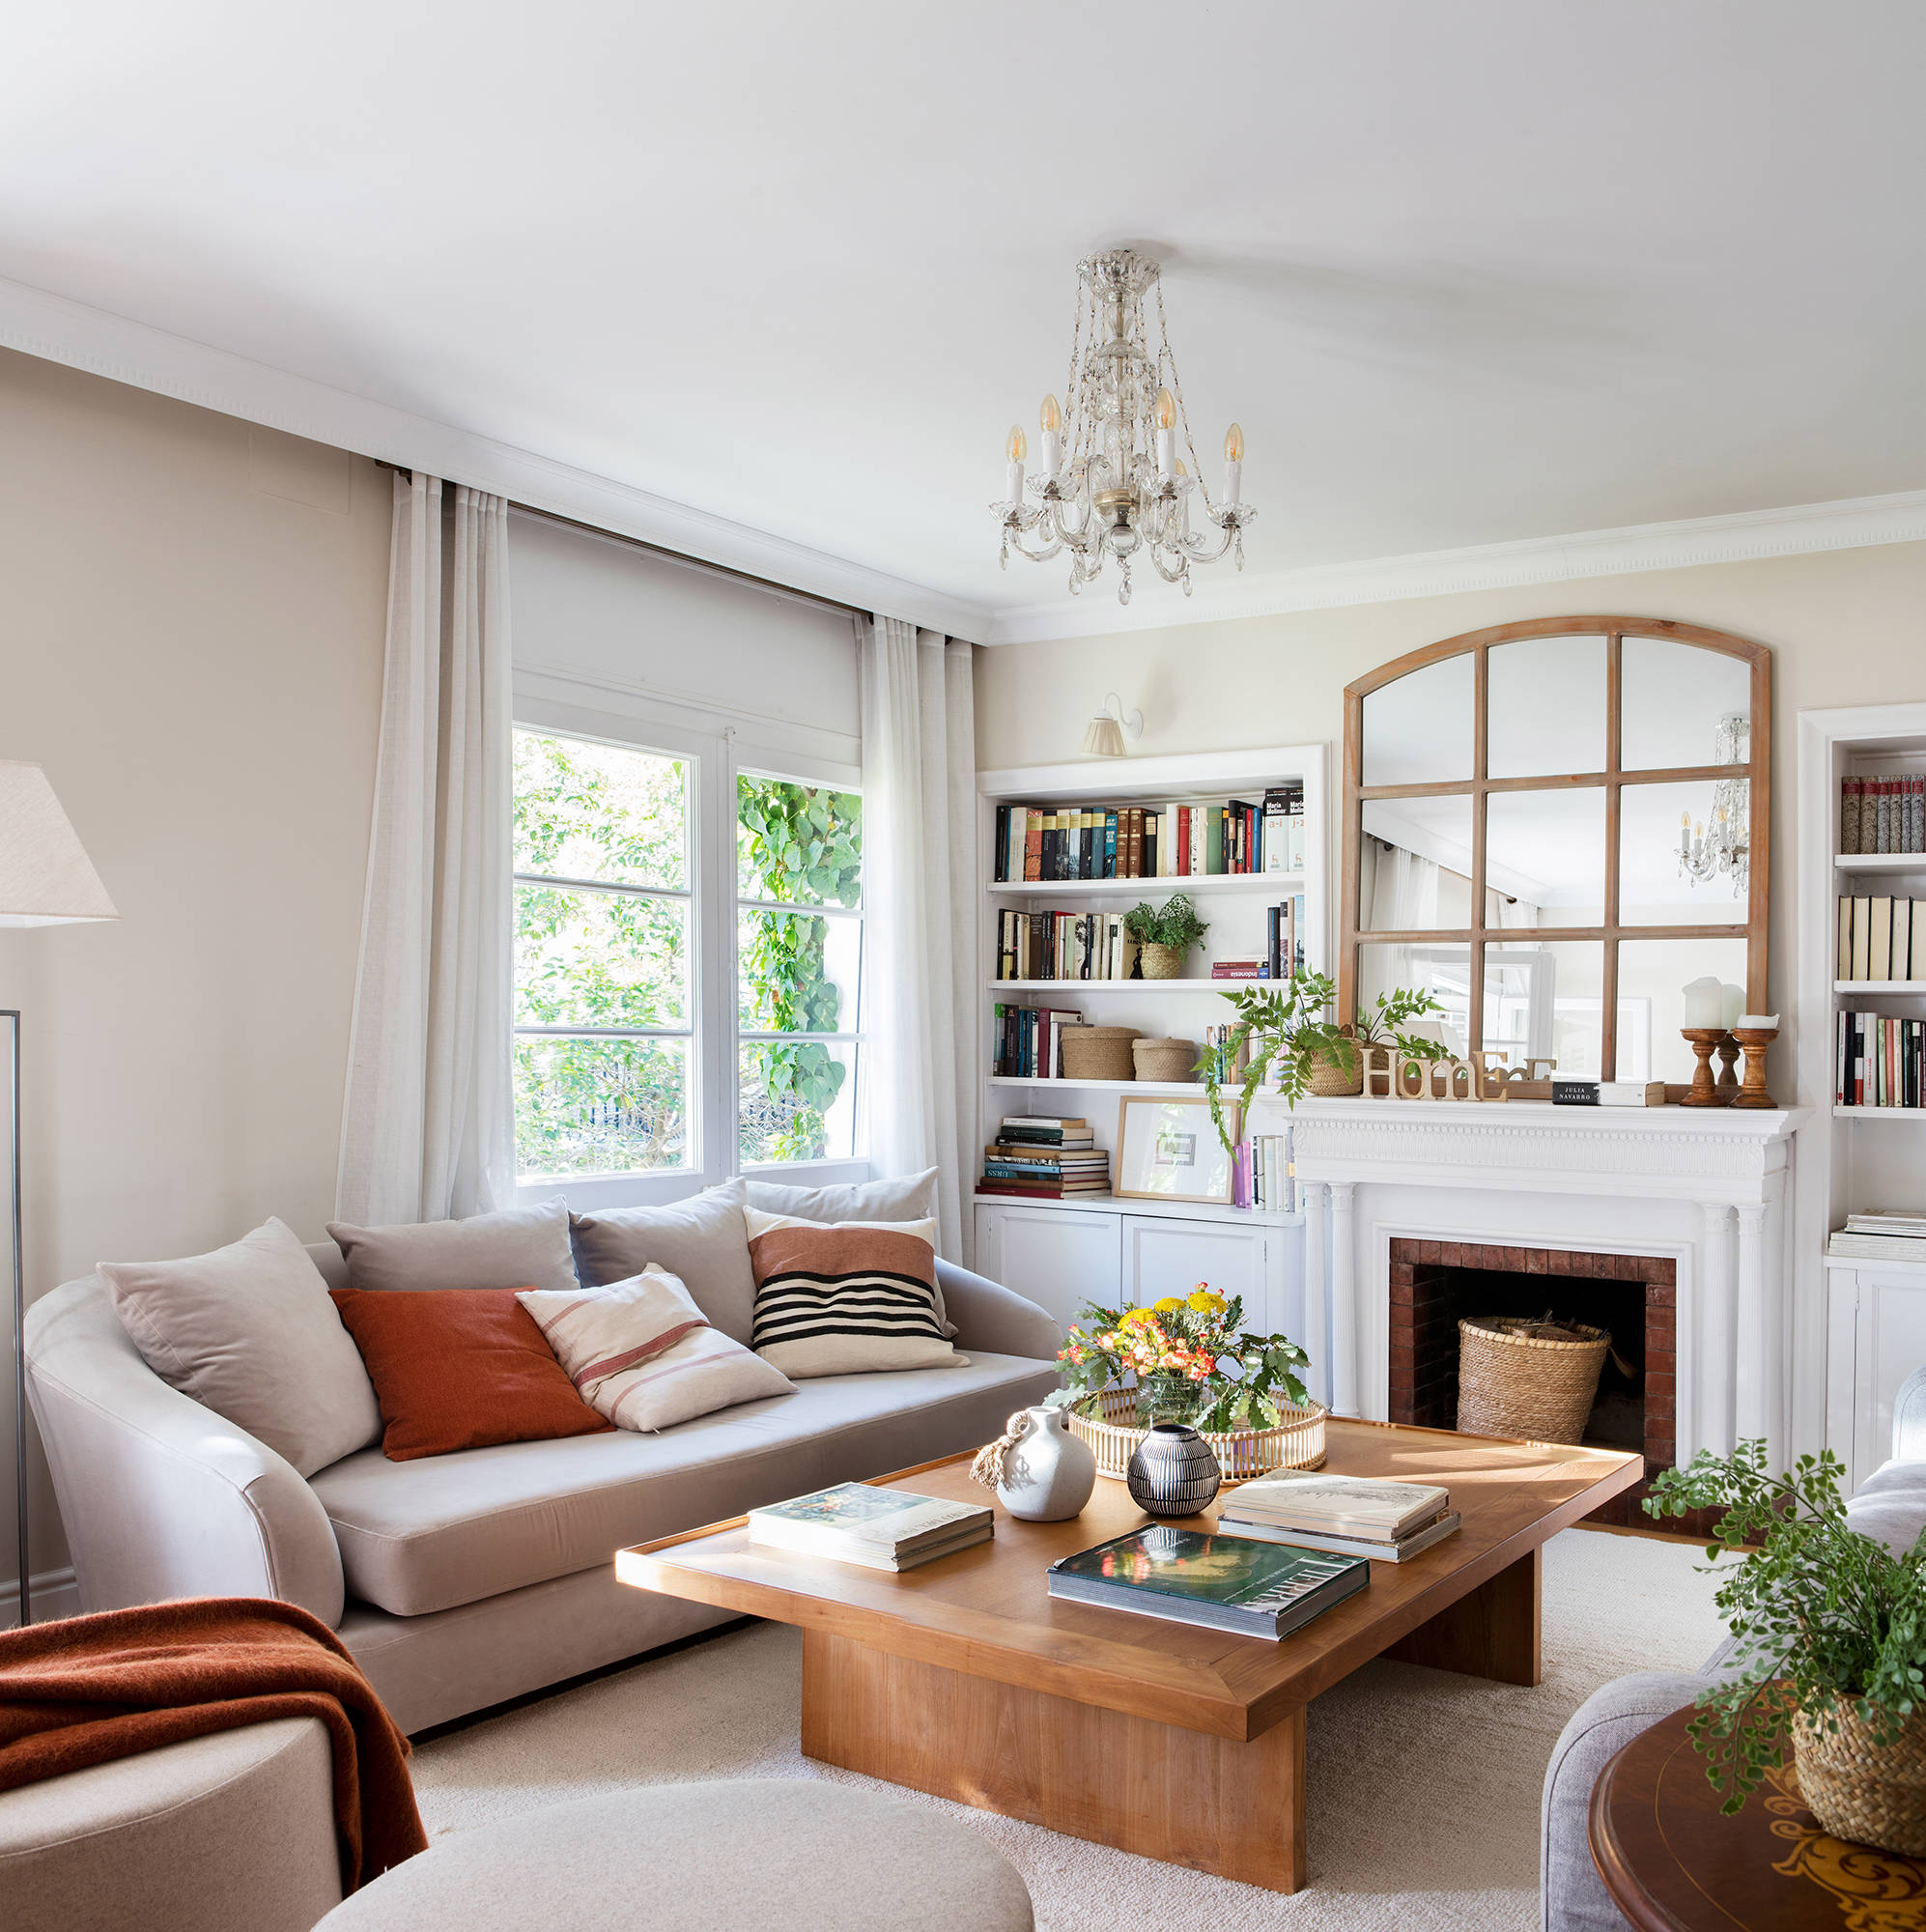 Salón de estilo clasico con sofá de diseño curvo